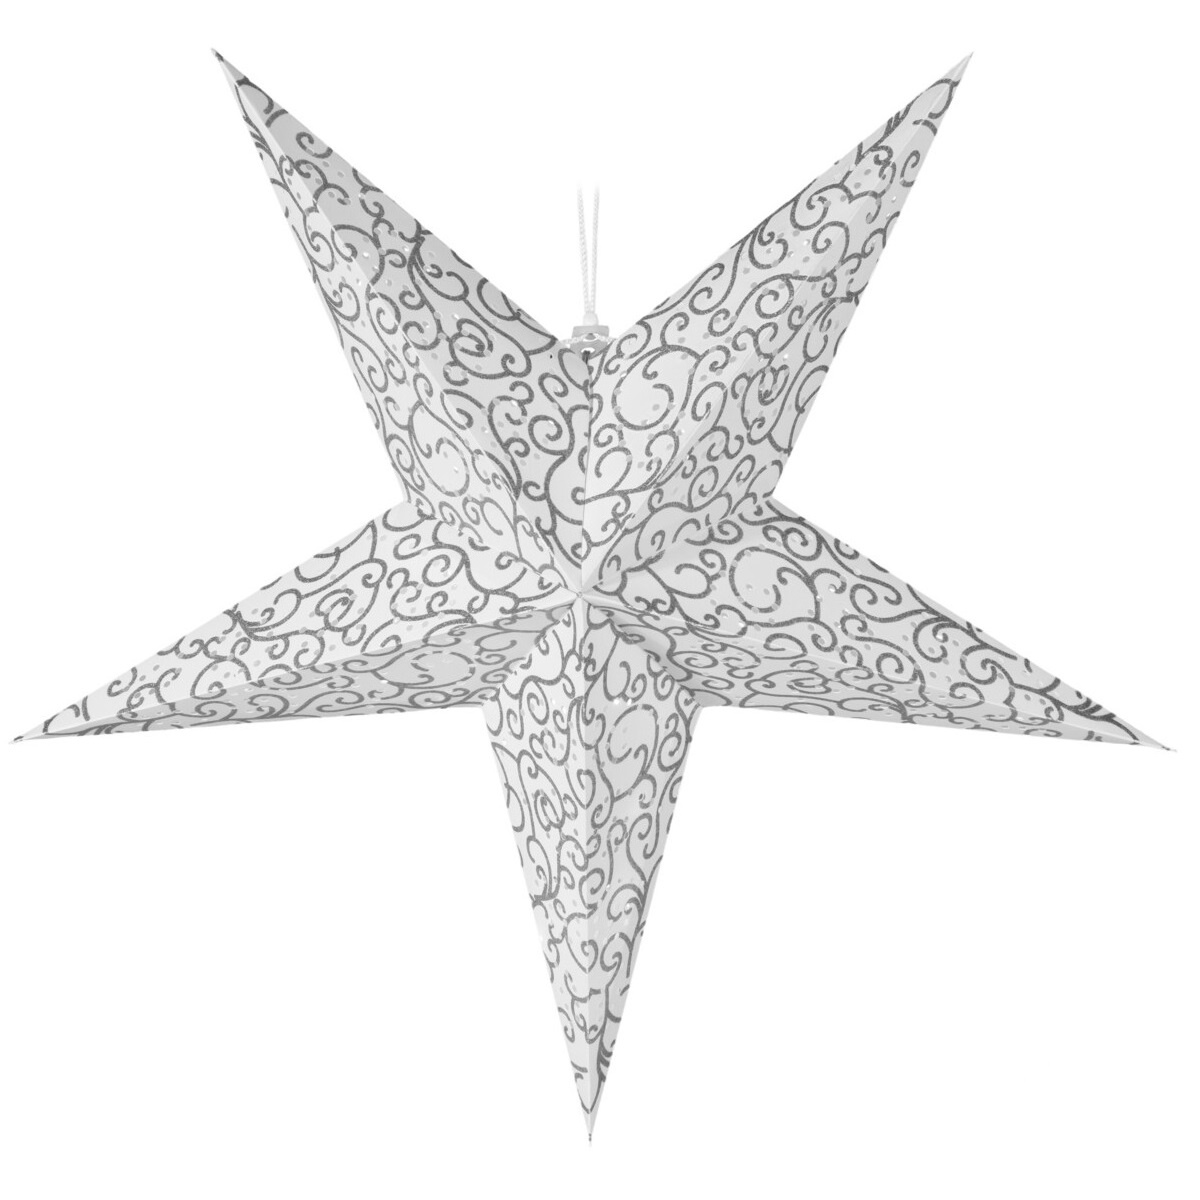 Závěsná svíticí vánoční hvězda stříbrná, 60 cm, LED, s časovačem